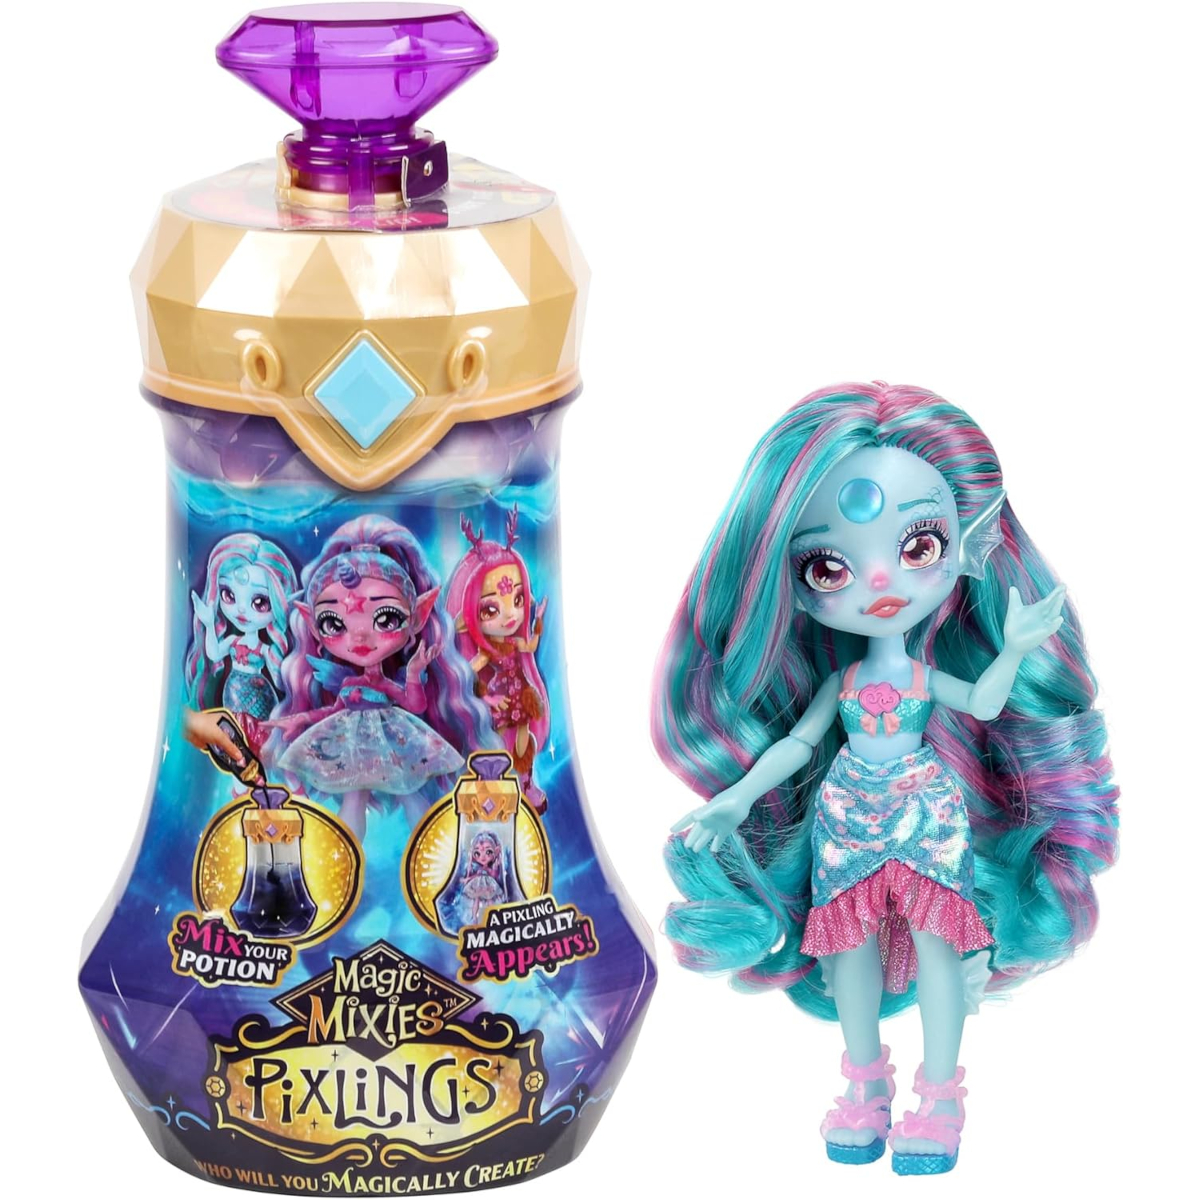 Кукла в бутылке Magic Mixies Pixlings Marena 14872 кукла в бутылке magic mixies pixlings marena 14872